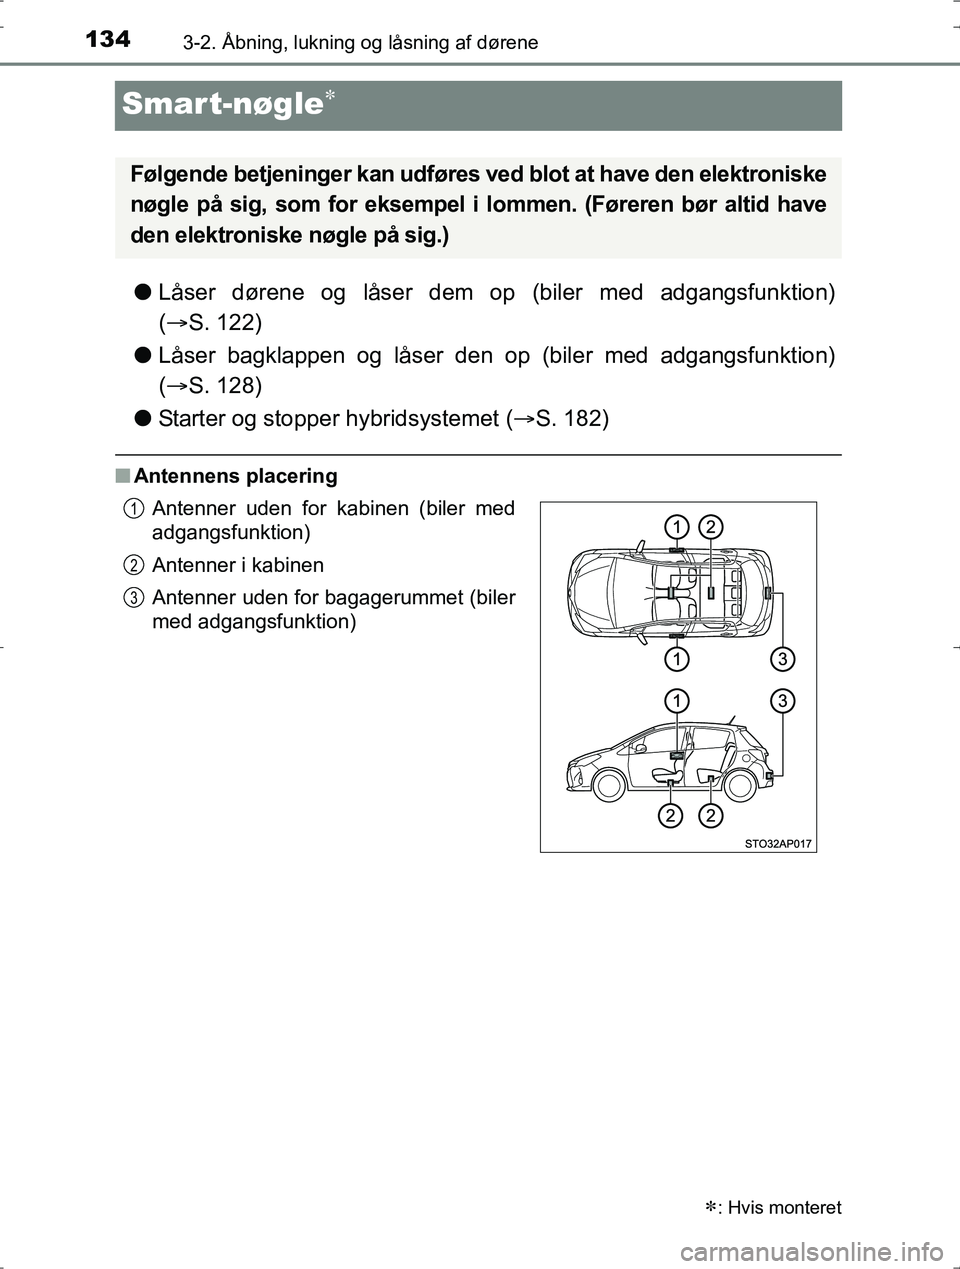 TOYOTA YARIS HYBRID 2017  Brugsanvisning (in Danish) 1343-2. Åbning, lukning og låsning af dørene
OM52J30DK
Smart-nøgle
lLåser dørene og låser dem op (biler med adgangsfunktion)
( S. 122)
l Låser bagklappen og låser den op (biler med adga